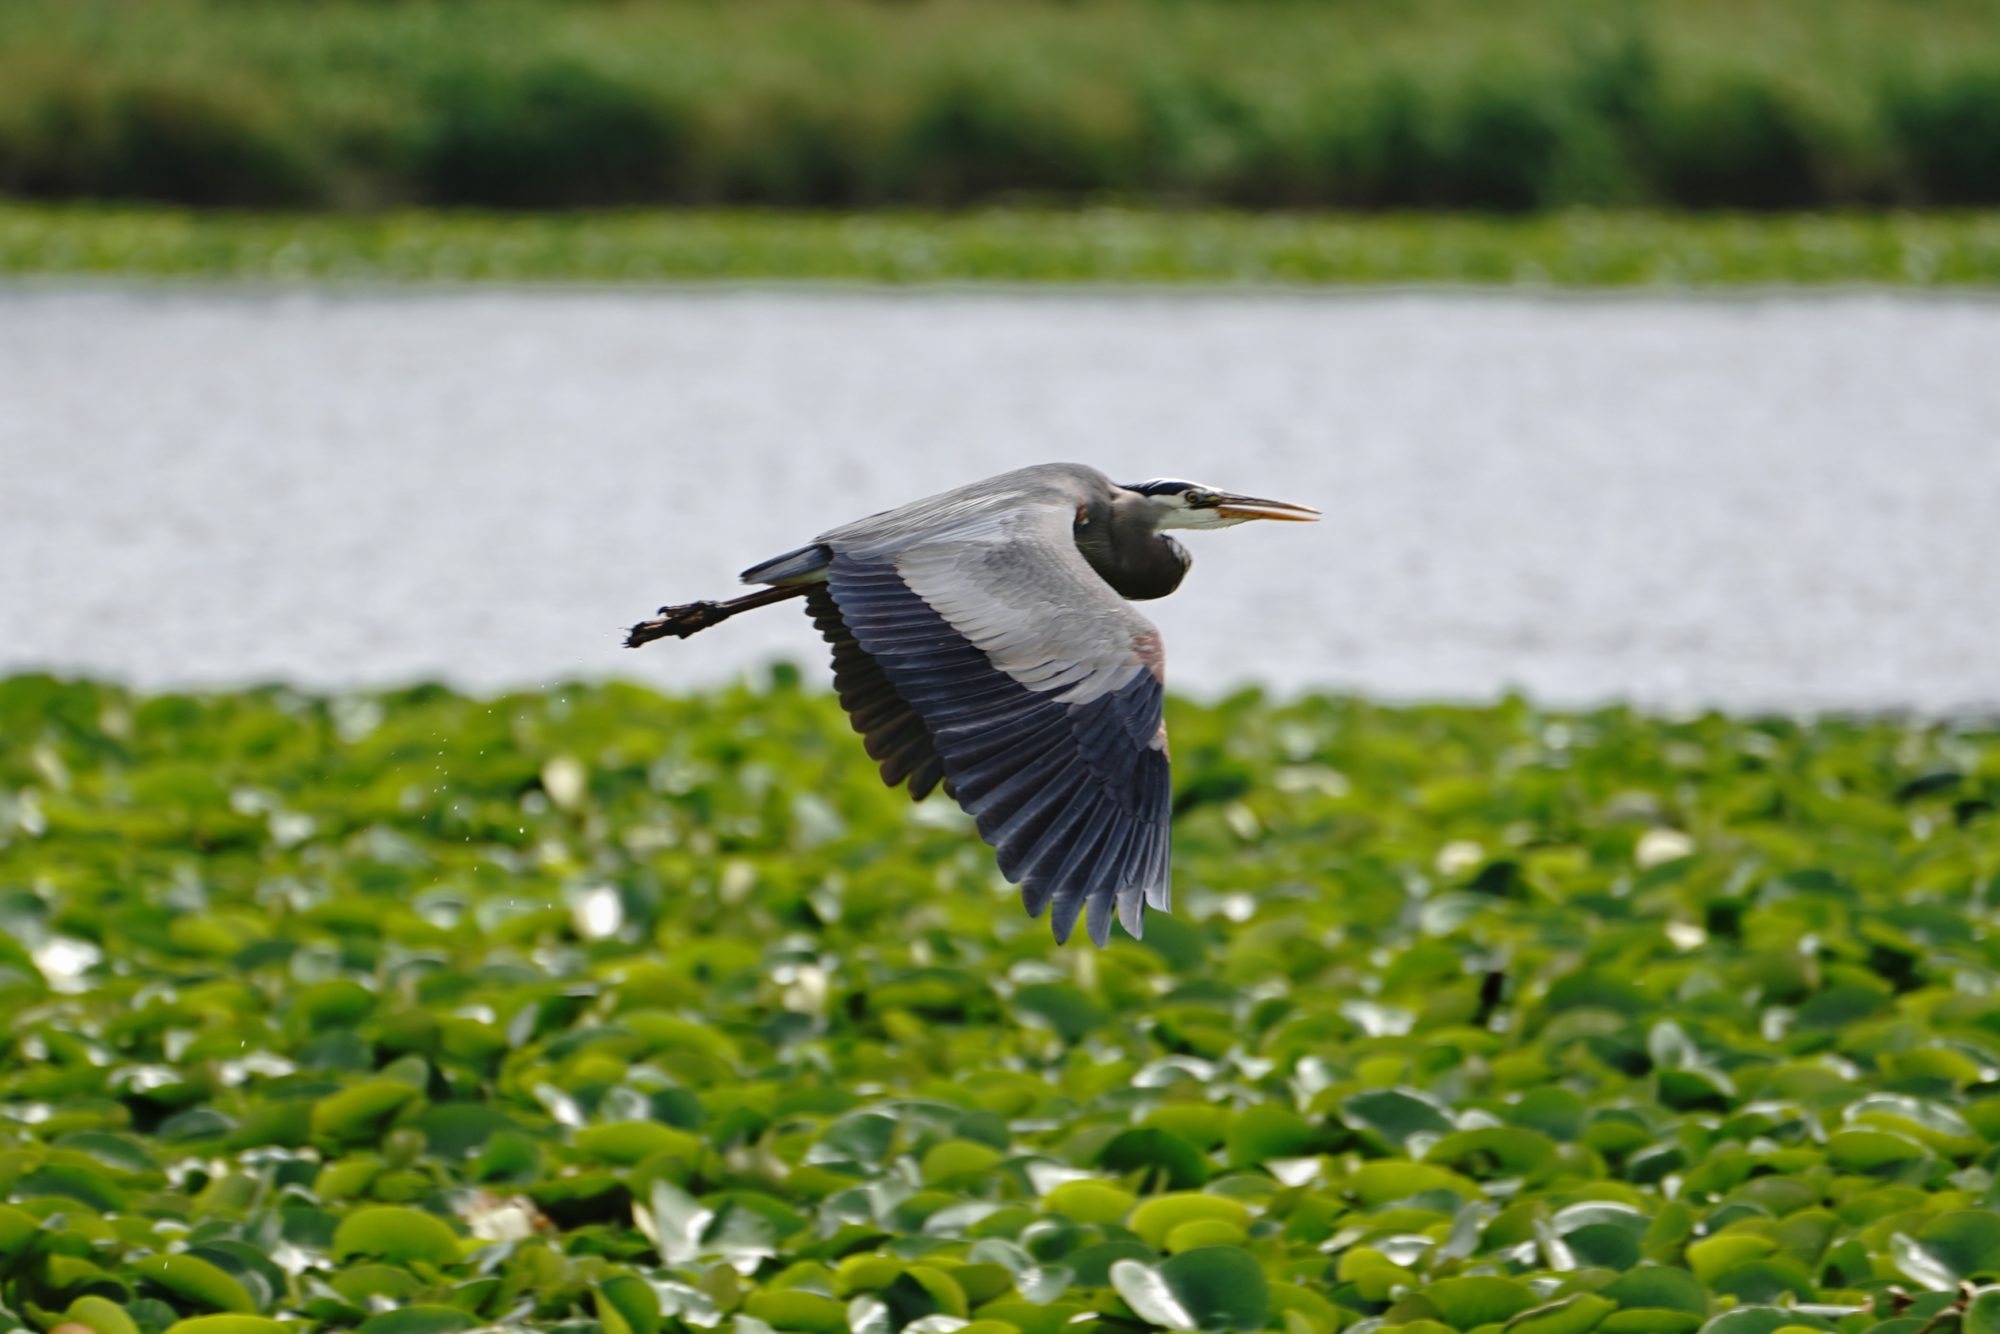 Great Blue Heron in flight